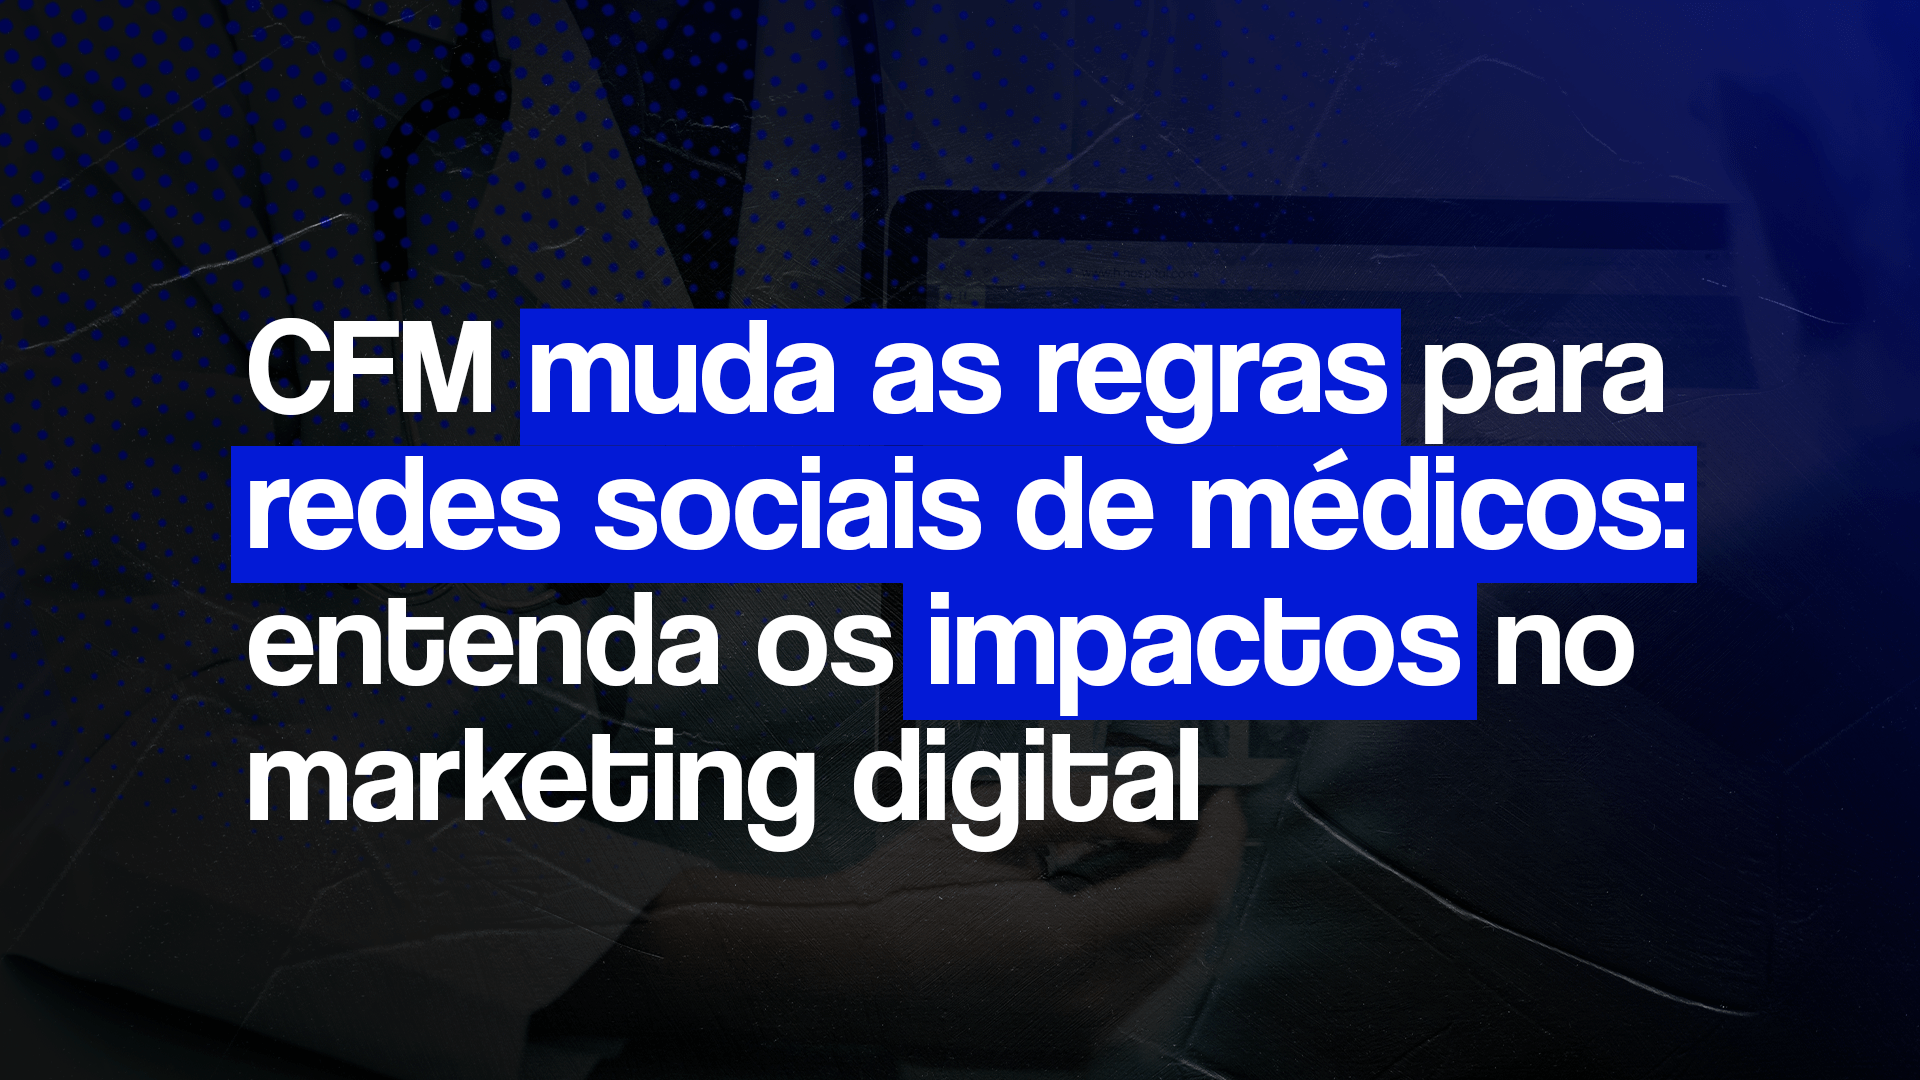 Imagem com o título: CFM muda as regras para redes sociais de médicos: entenda os impactos no marketing digital